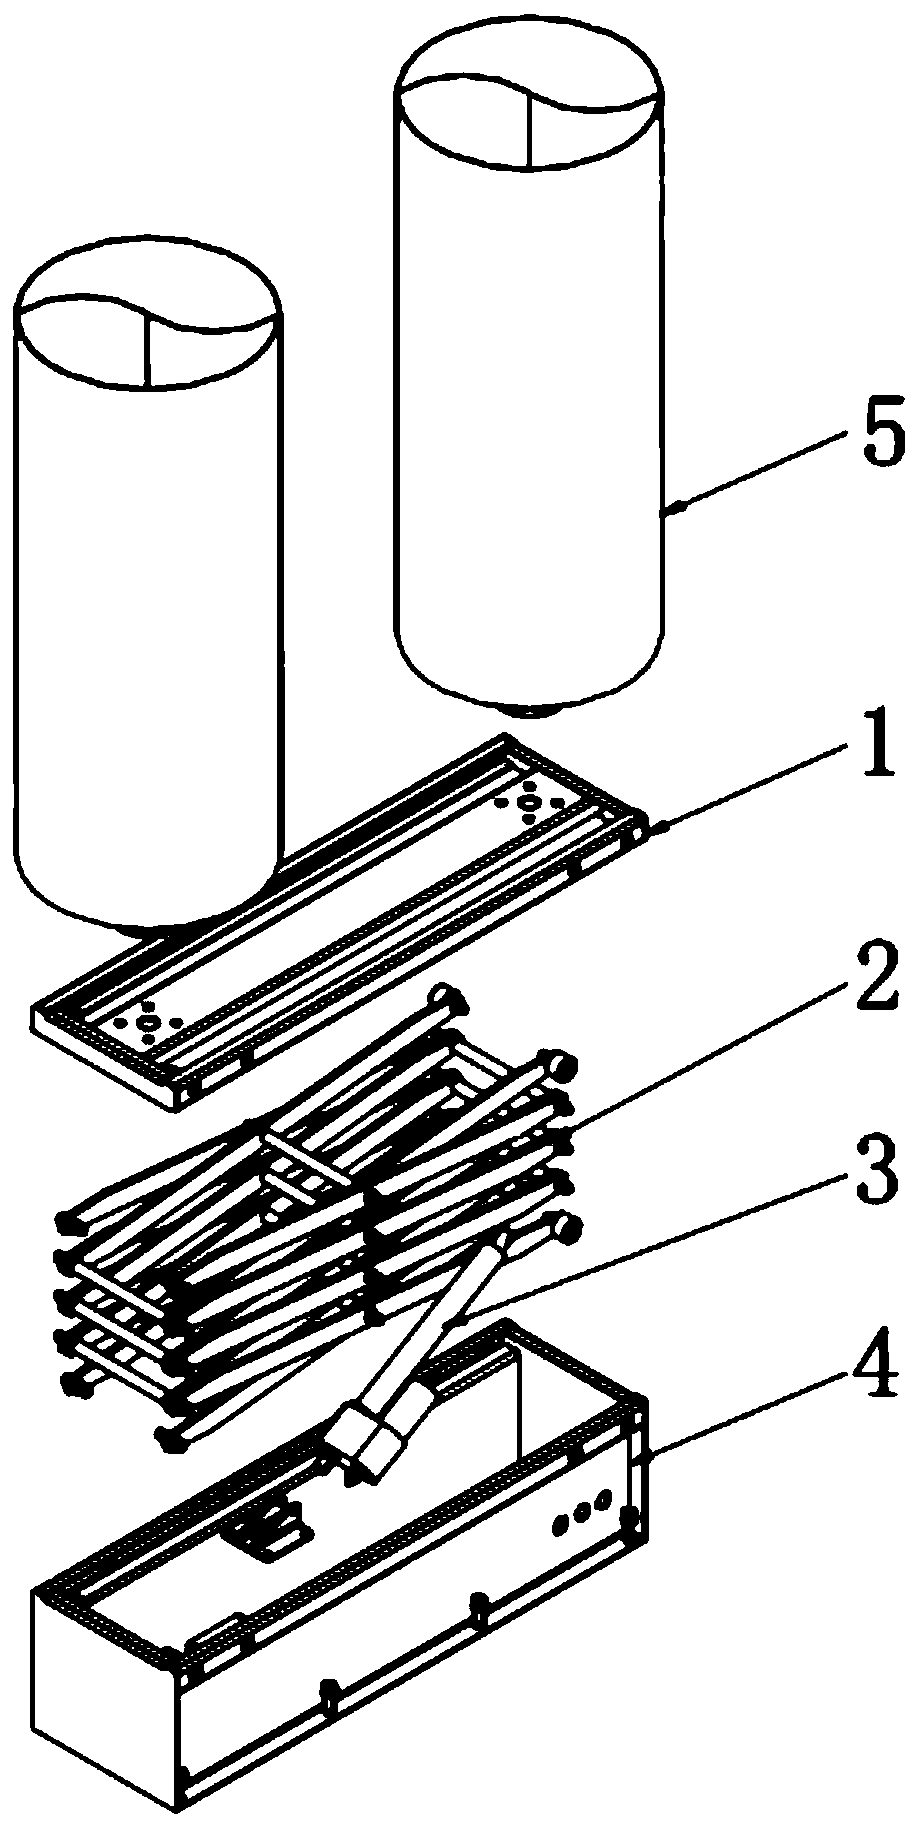 Scissor type lifting device for fan